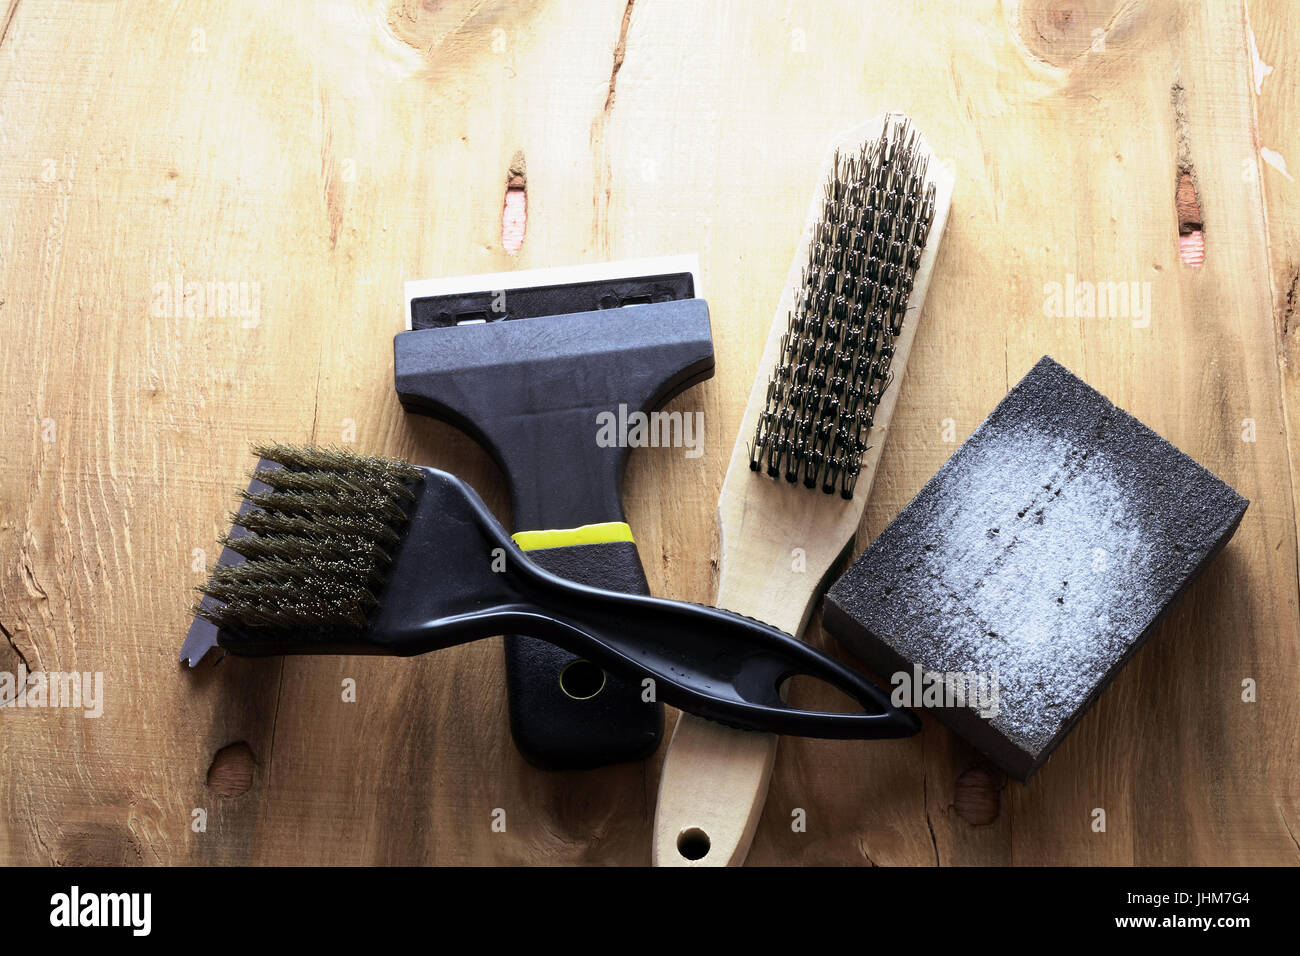 Schleifen von Werkzeugen auf hölzernen Hintergrund Stockfotografie - Alamy